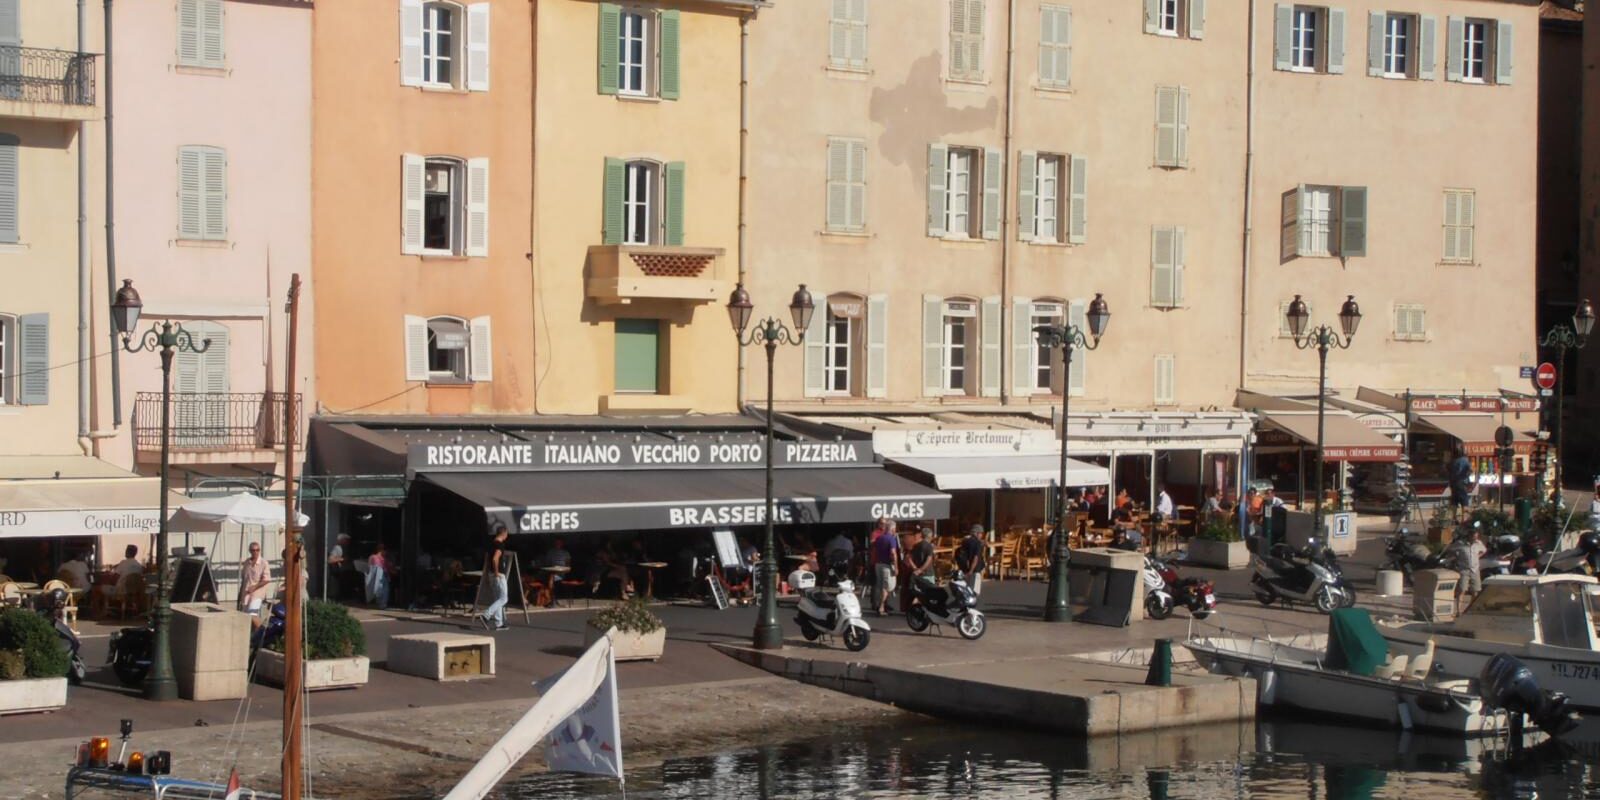 brasserie-restaurant-vecchio-porto-saint-tropez-13835991920